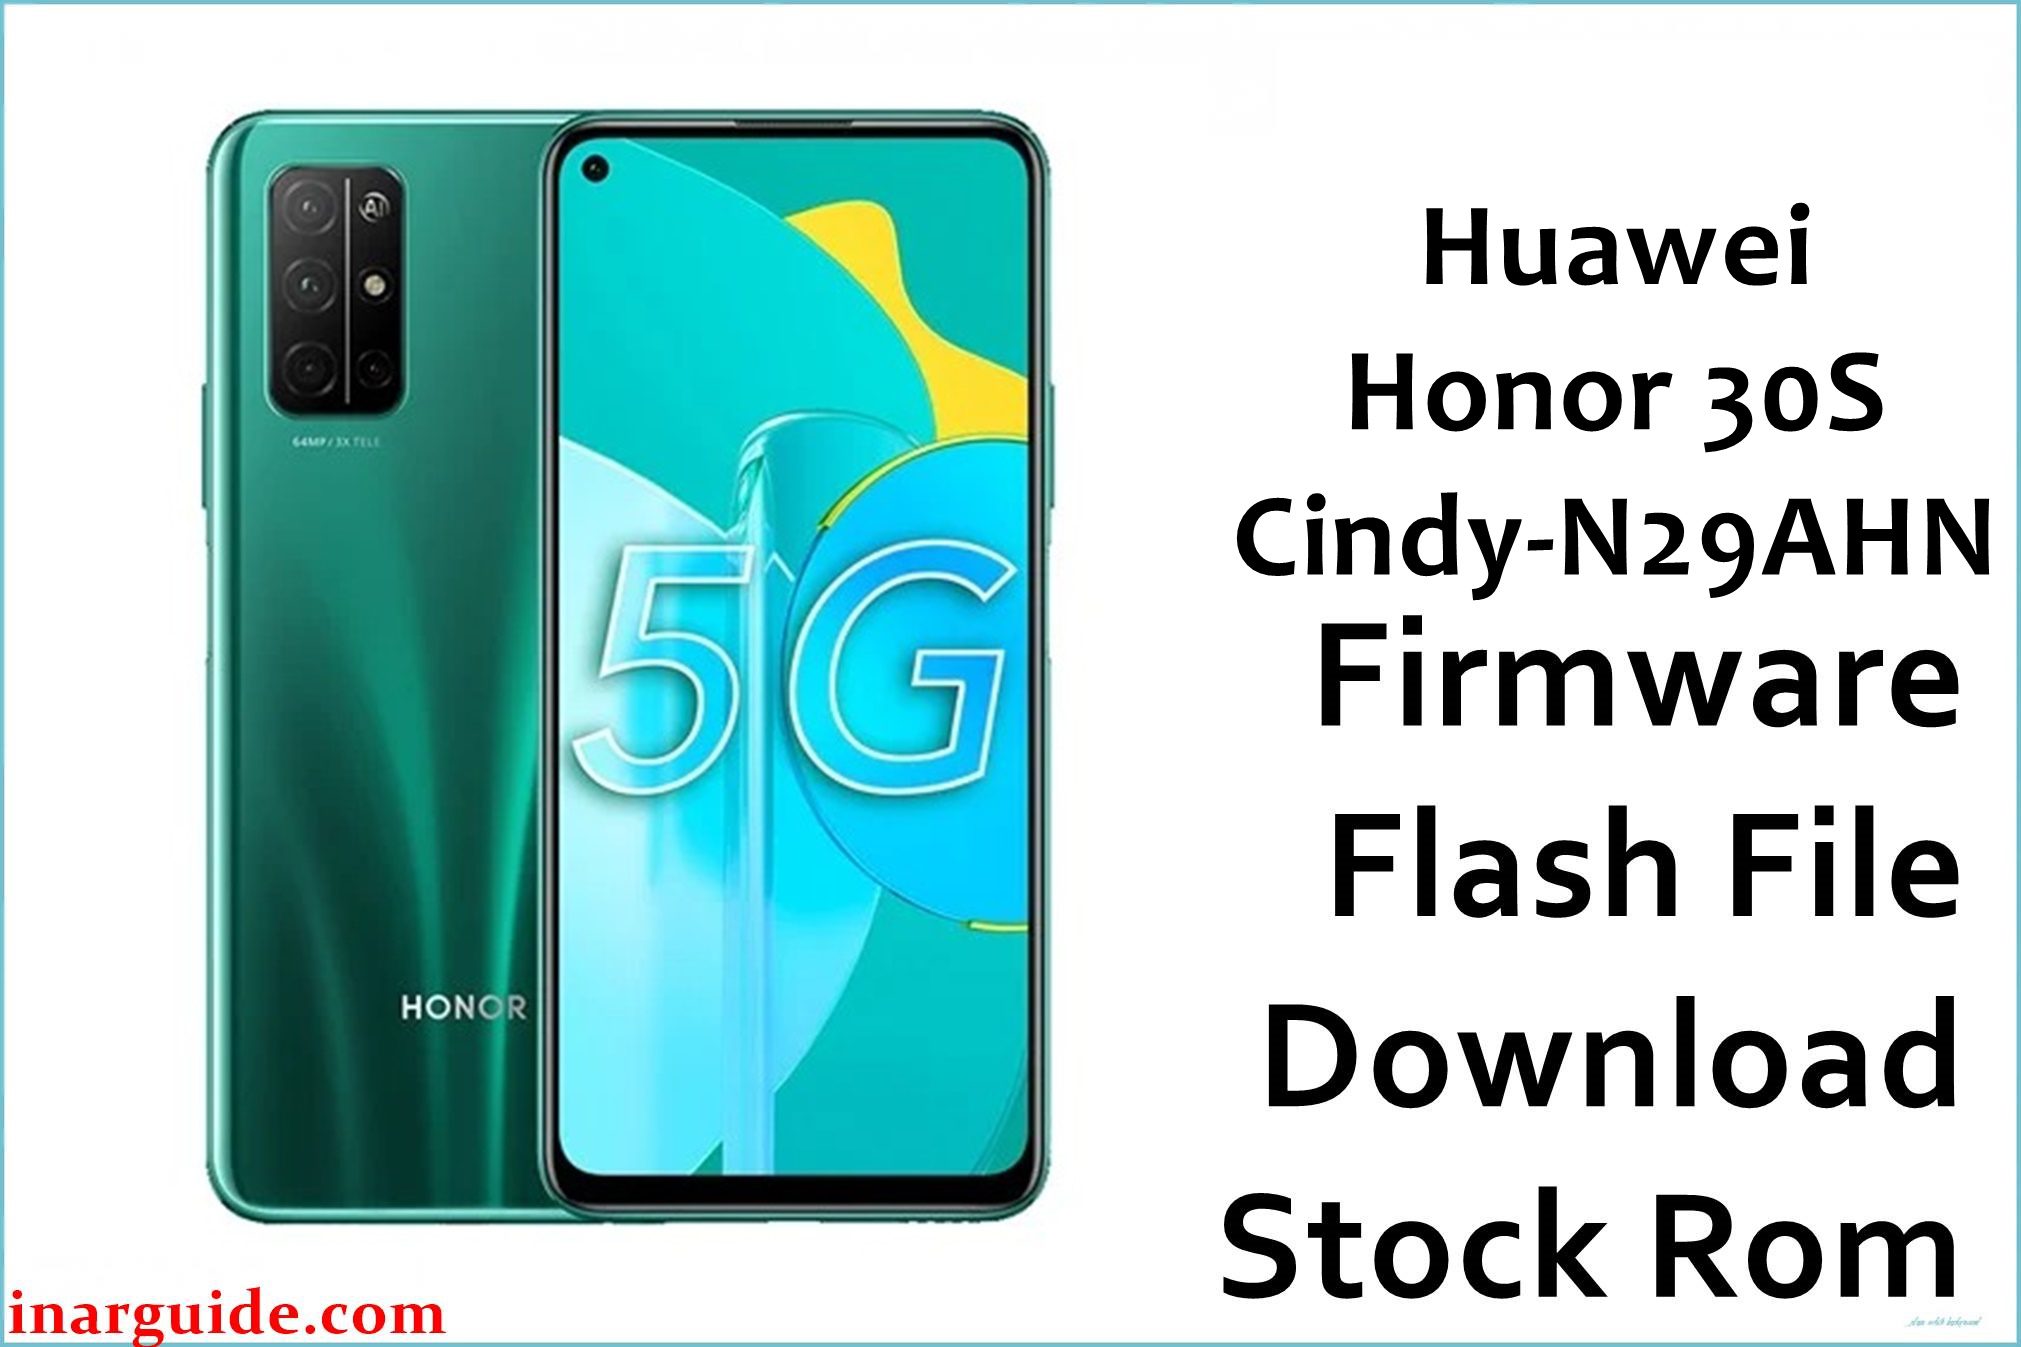 Huawei Honor 30S Cindy N29AHN